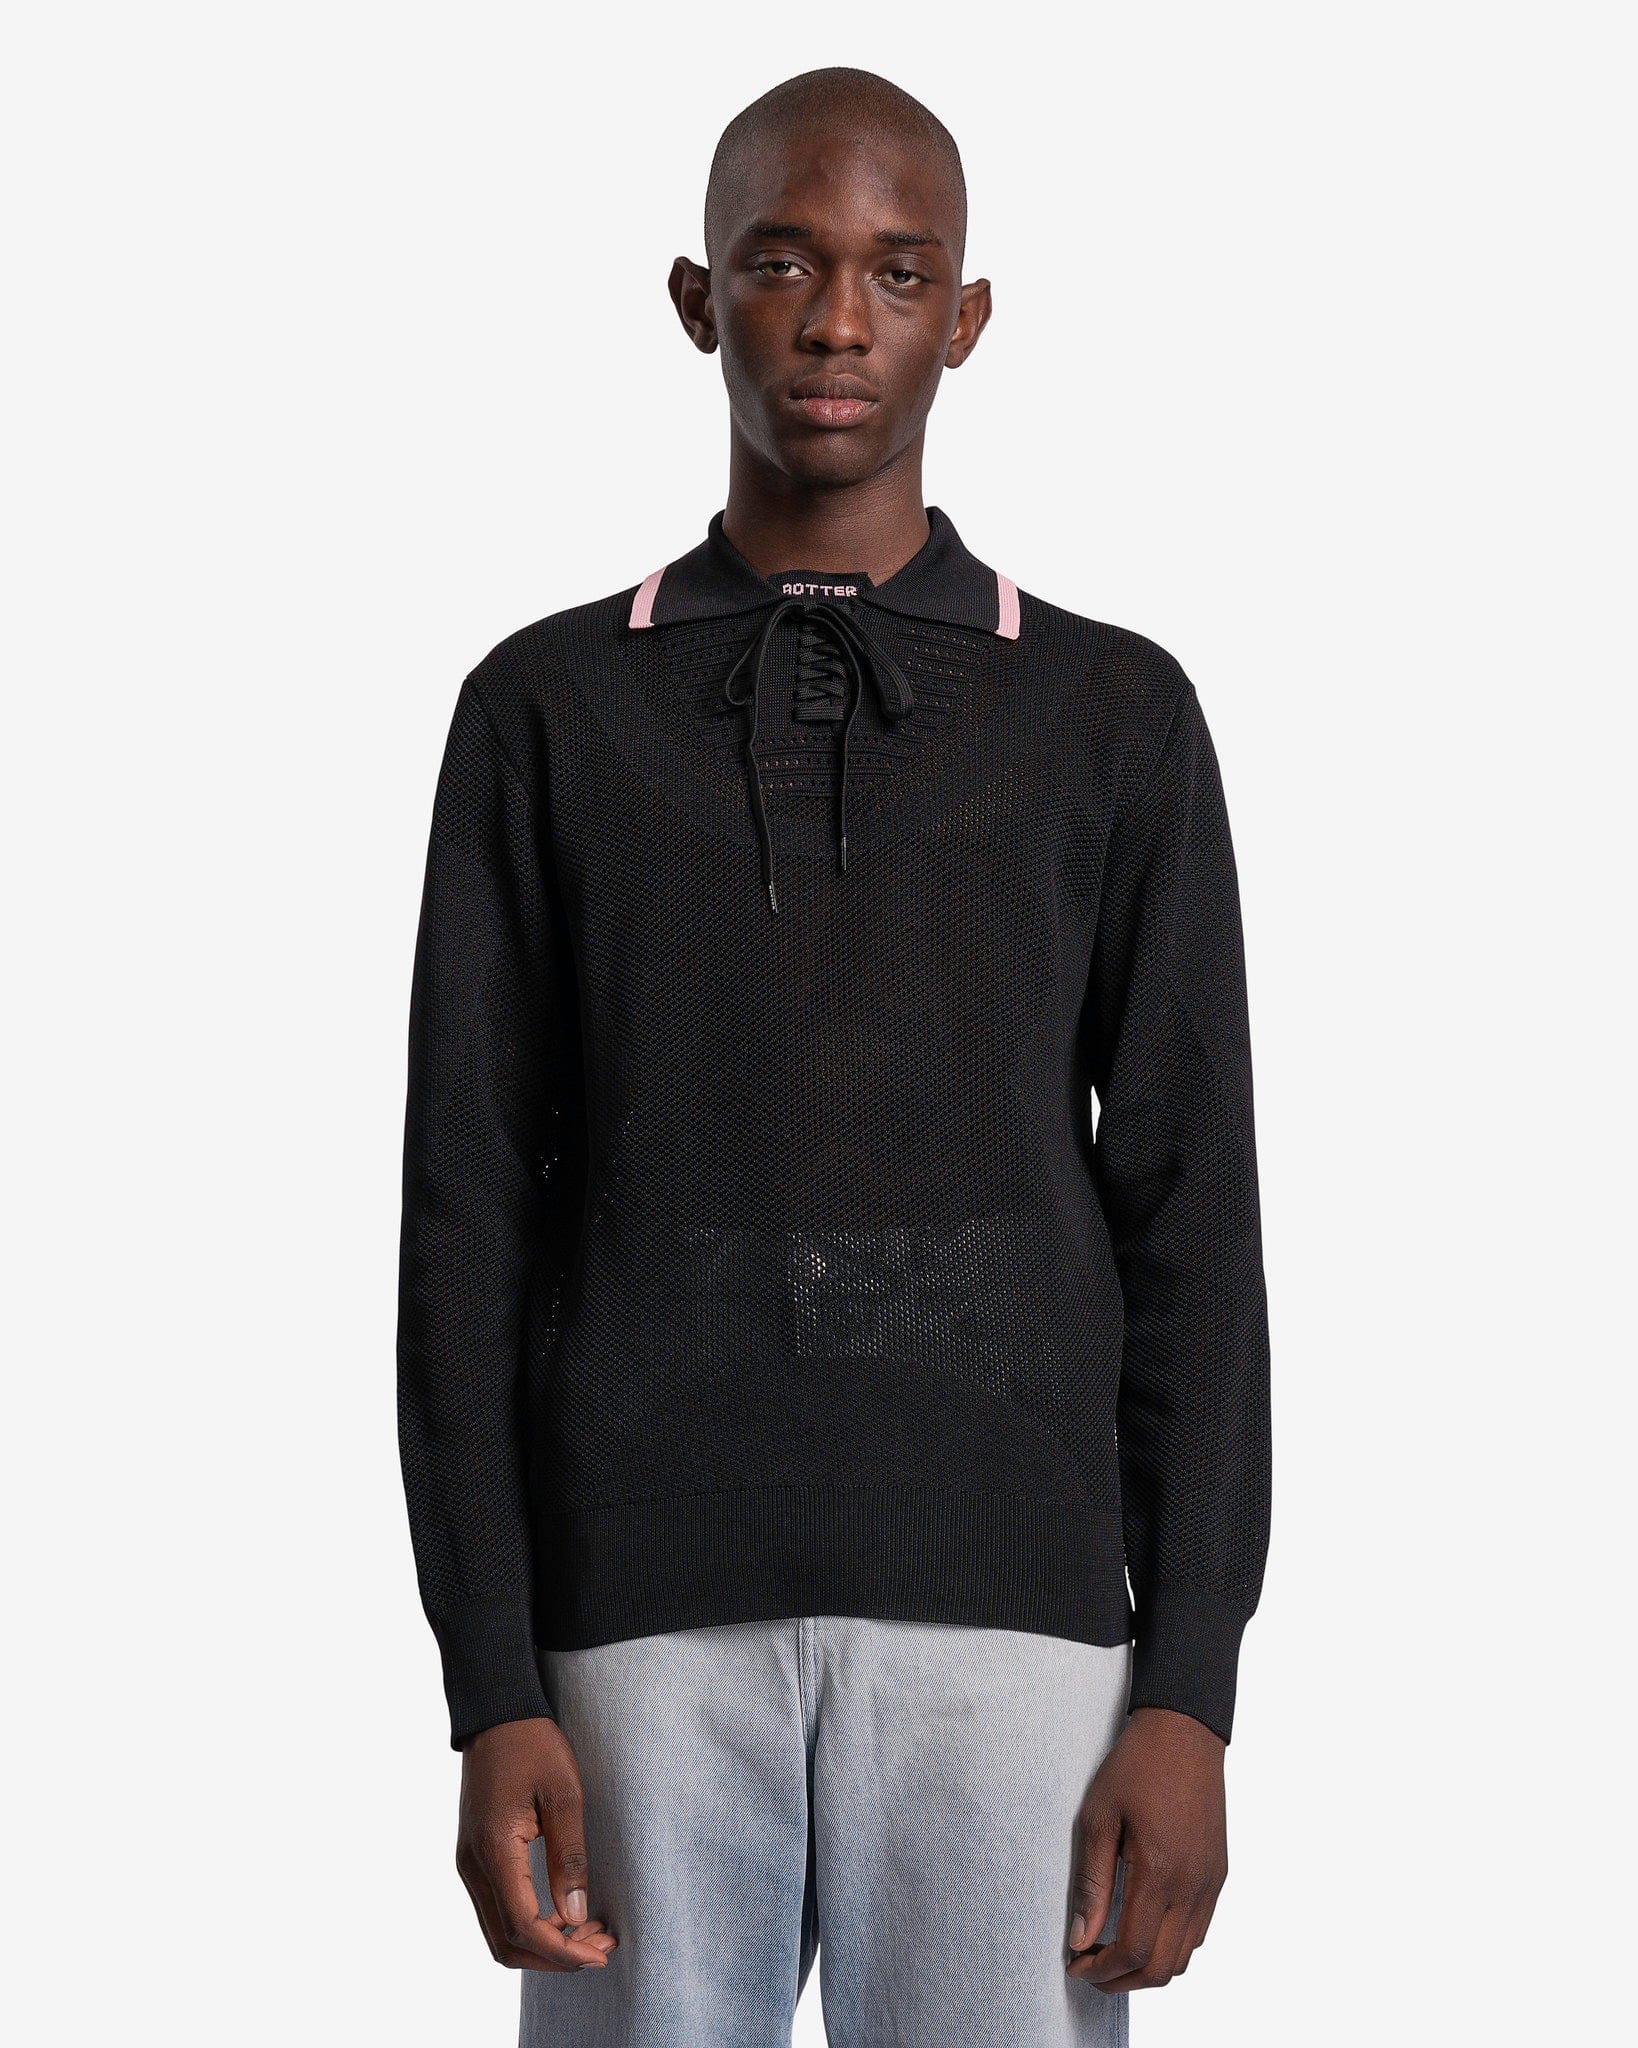 Botter Men's Shirts Knitted Sneaker Upper Polo in Black